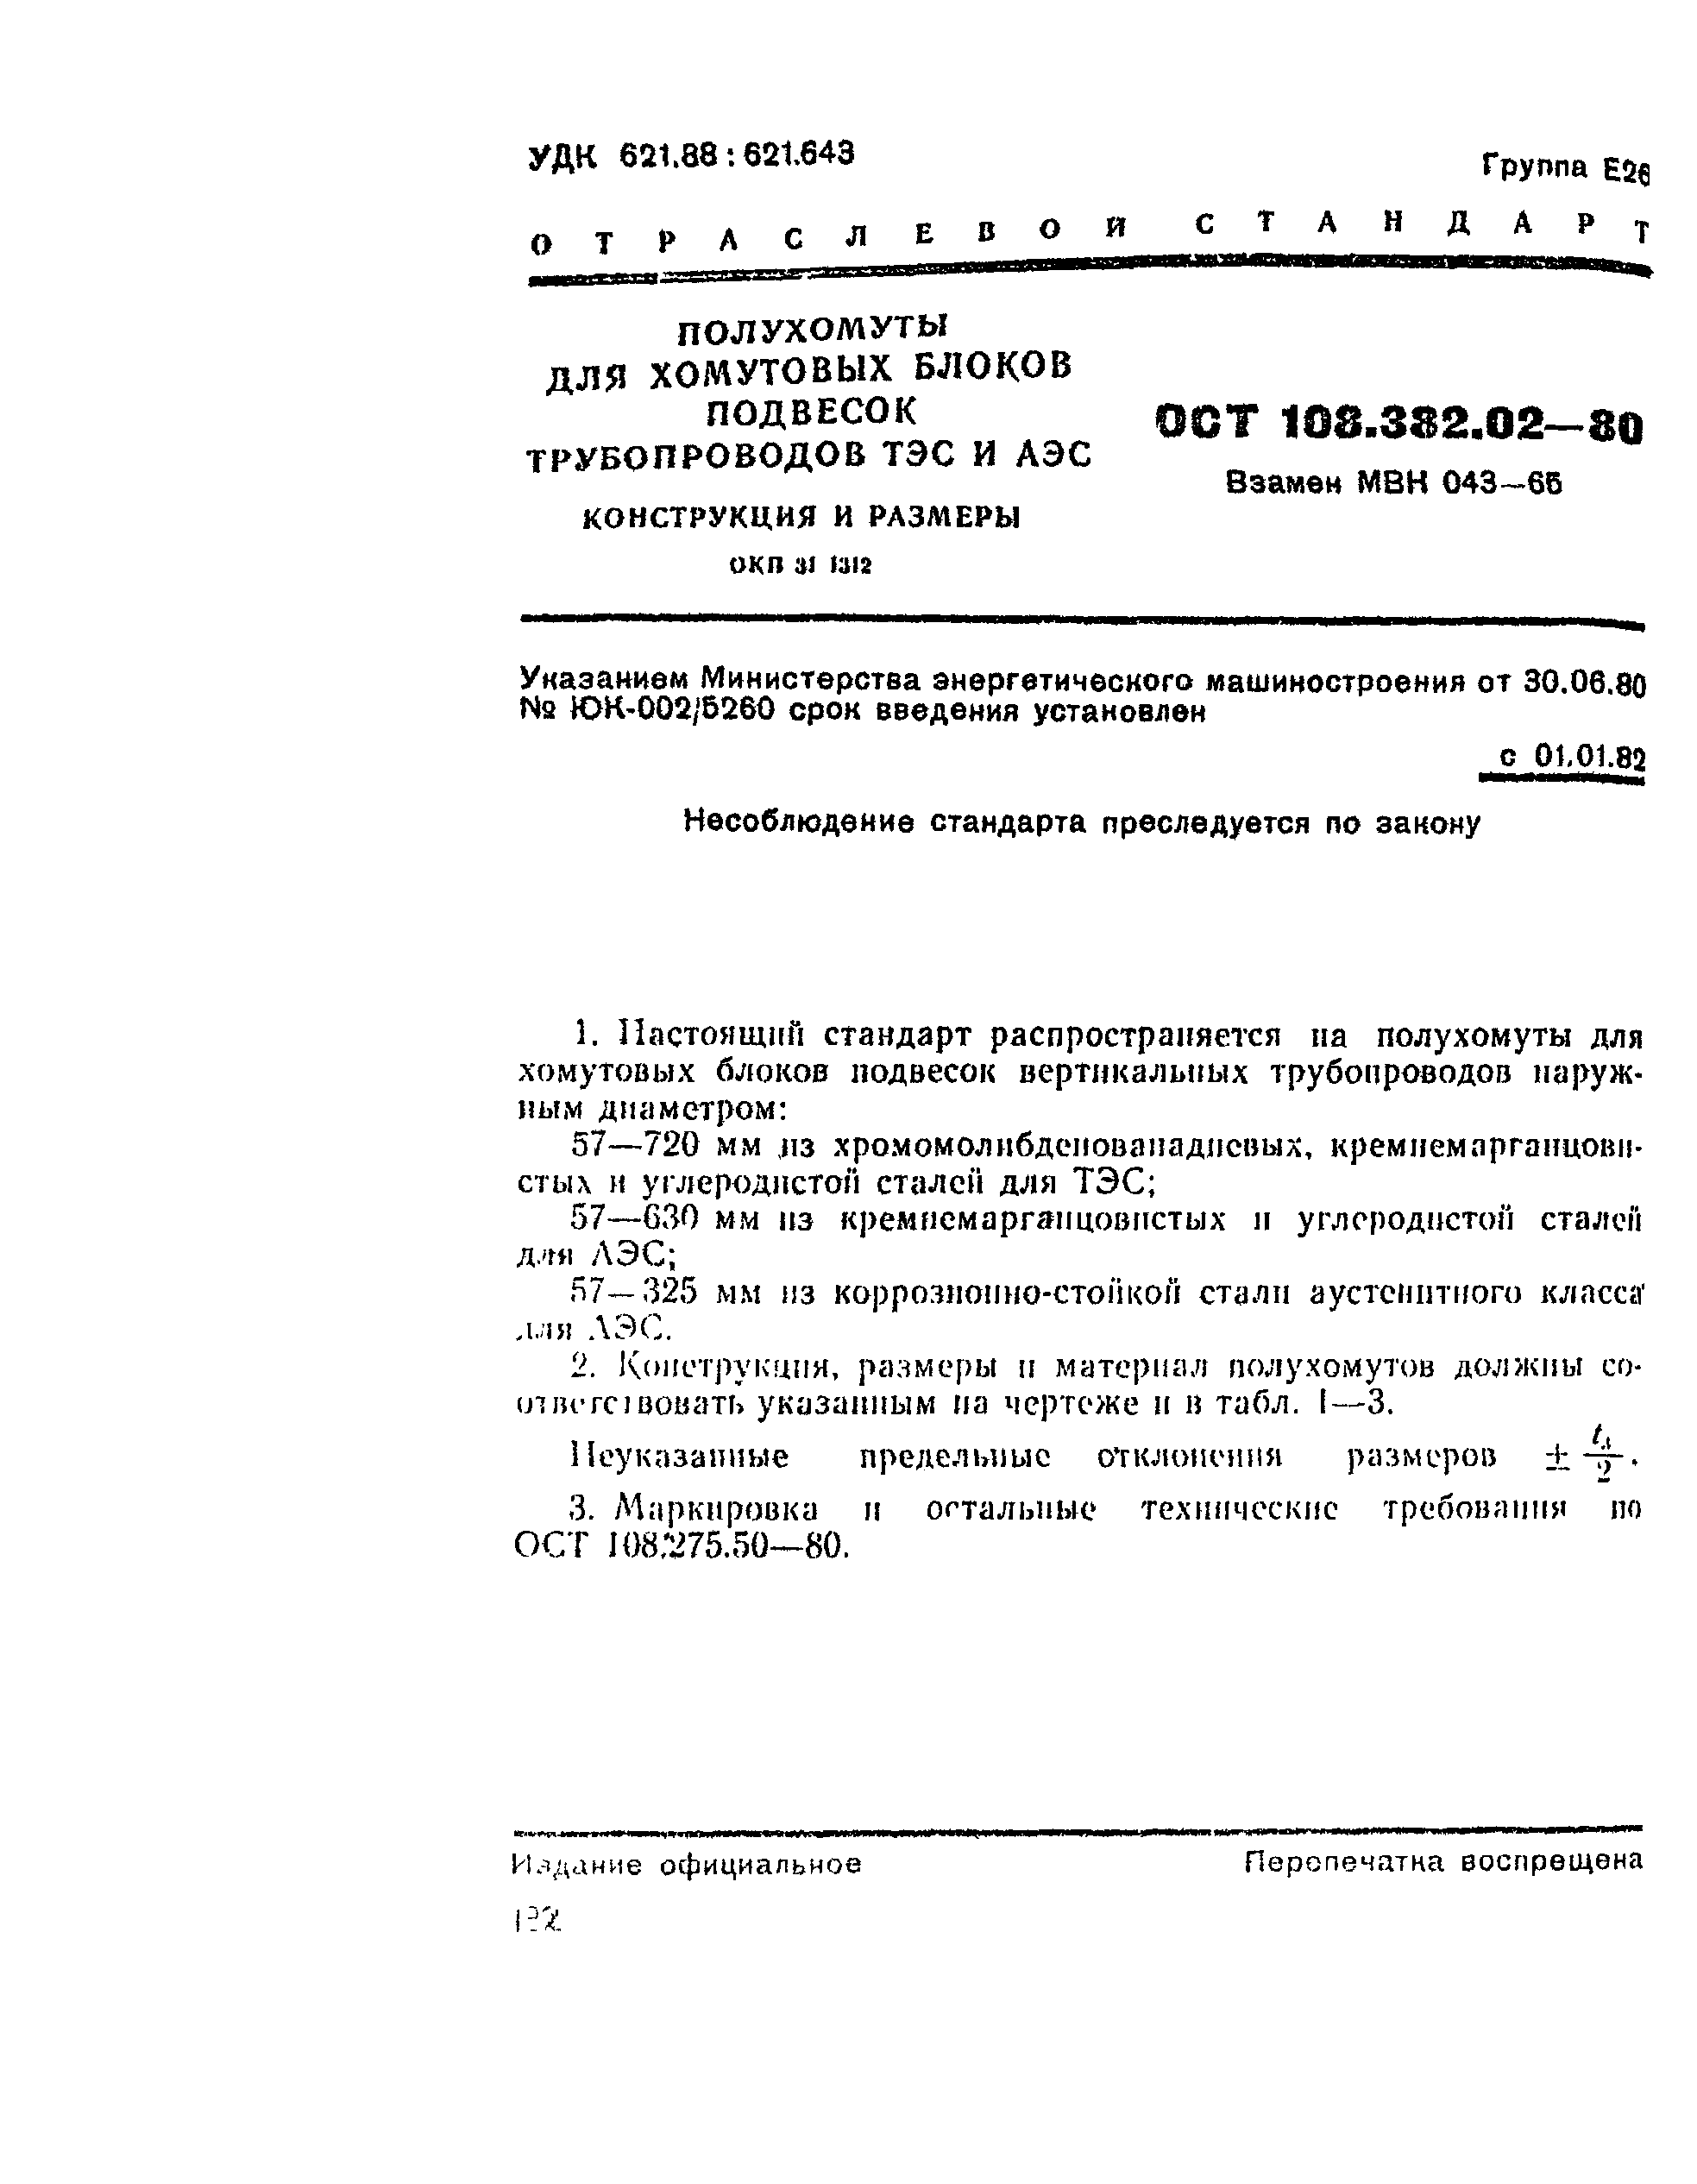 ОСТ 108.382.02-80